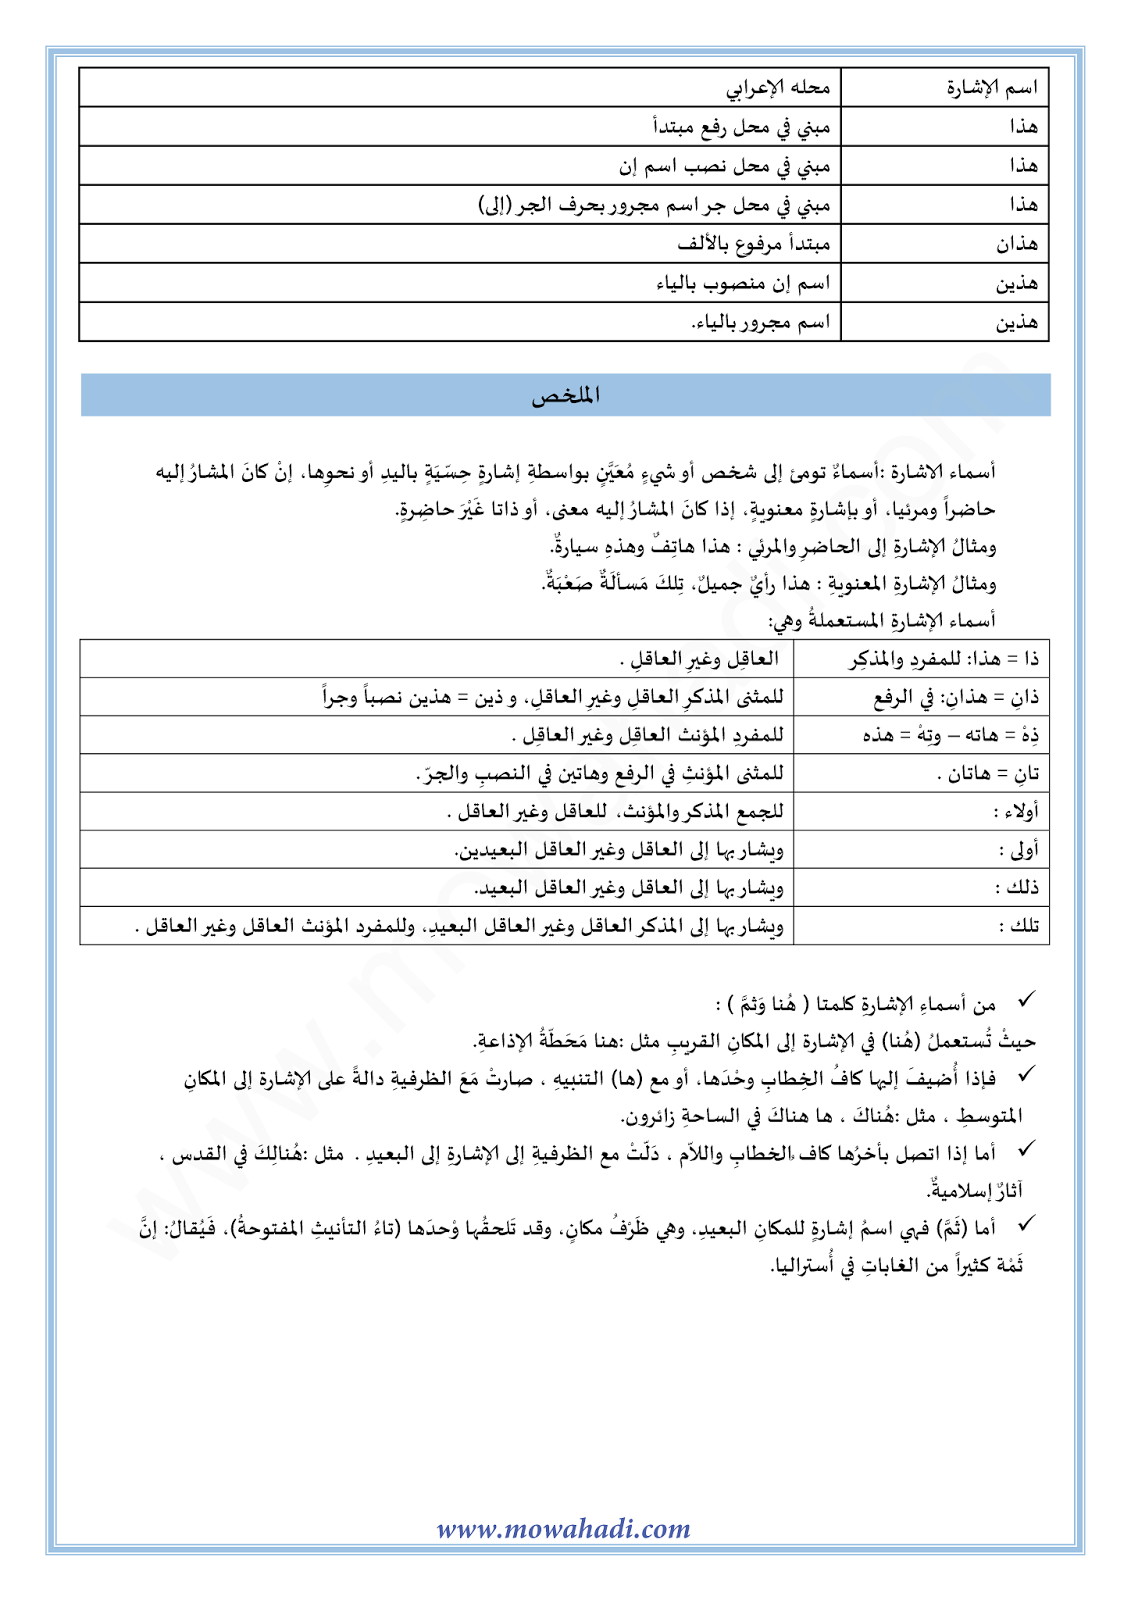 الدرس اللغوي أسماء الإشارة للسنة الأولى اعدادي في مادة اللغة العربية 16-cours-dars-loghawi1_002